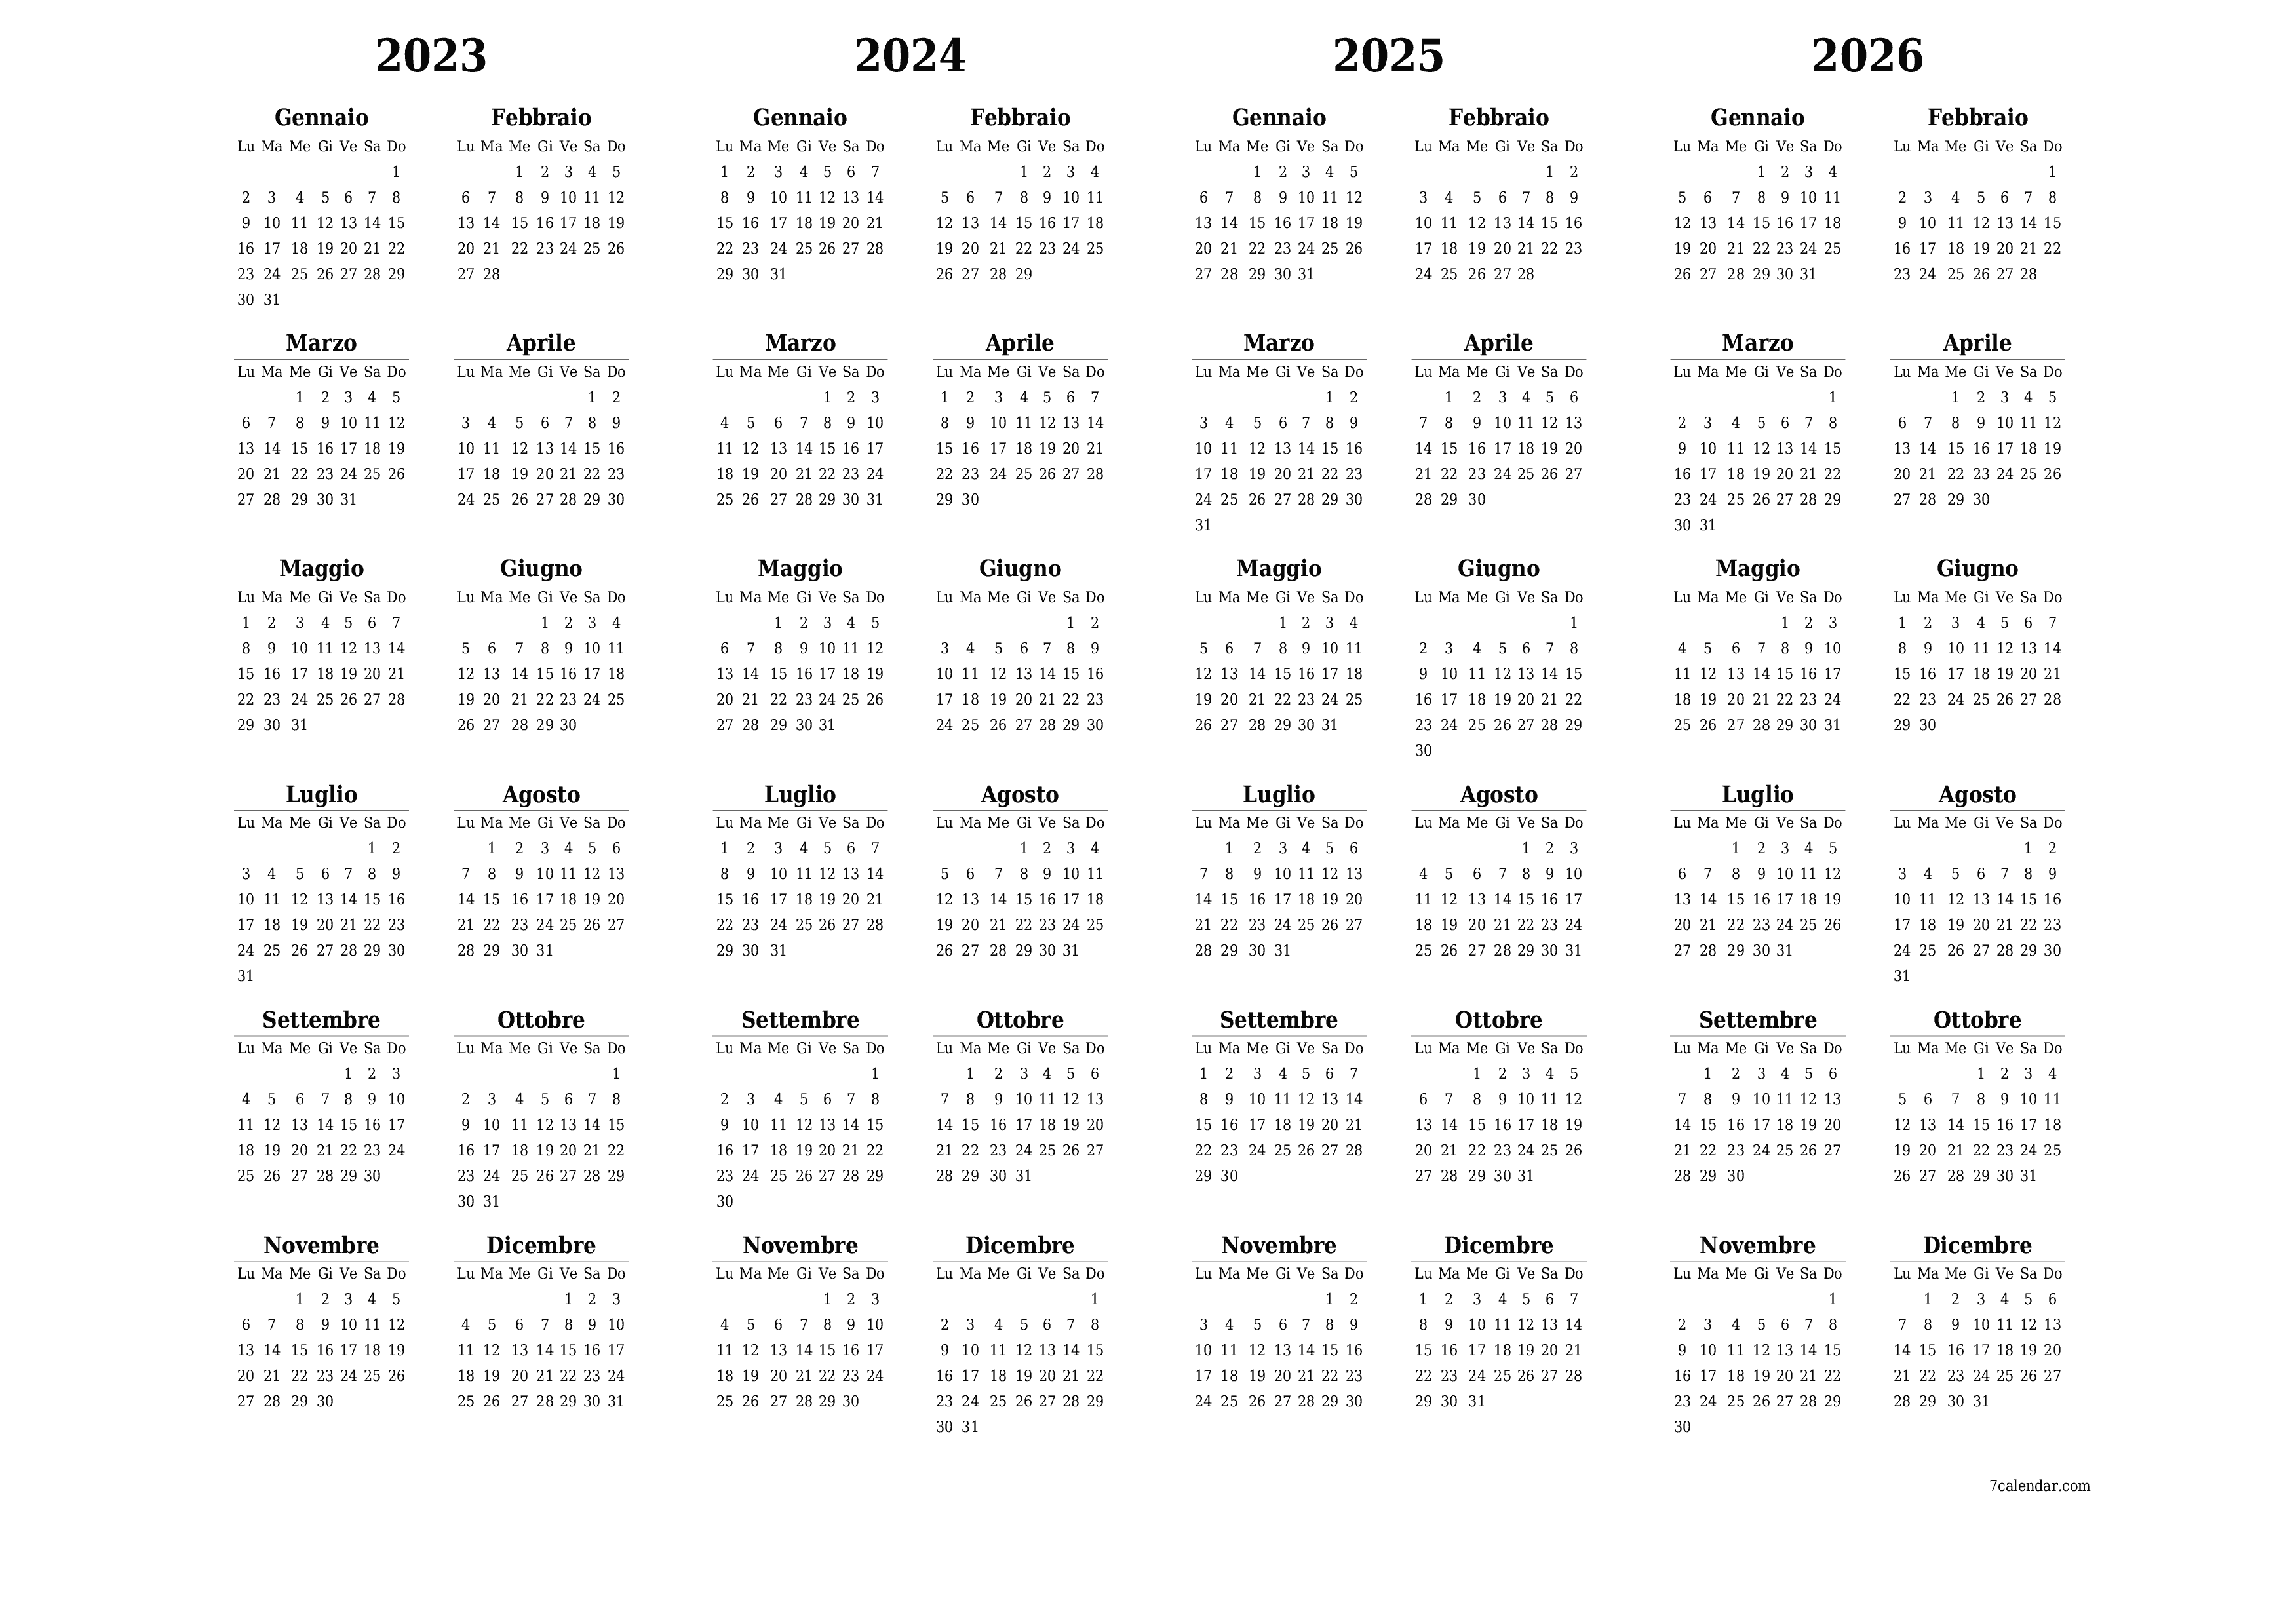  stampabile da parete modello di gratuitoorizzontale Annuale calendario Marzo (Mar) 2023